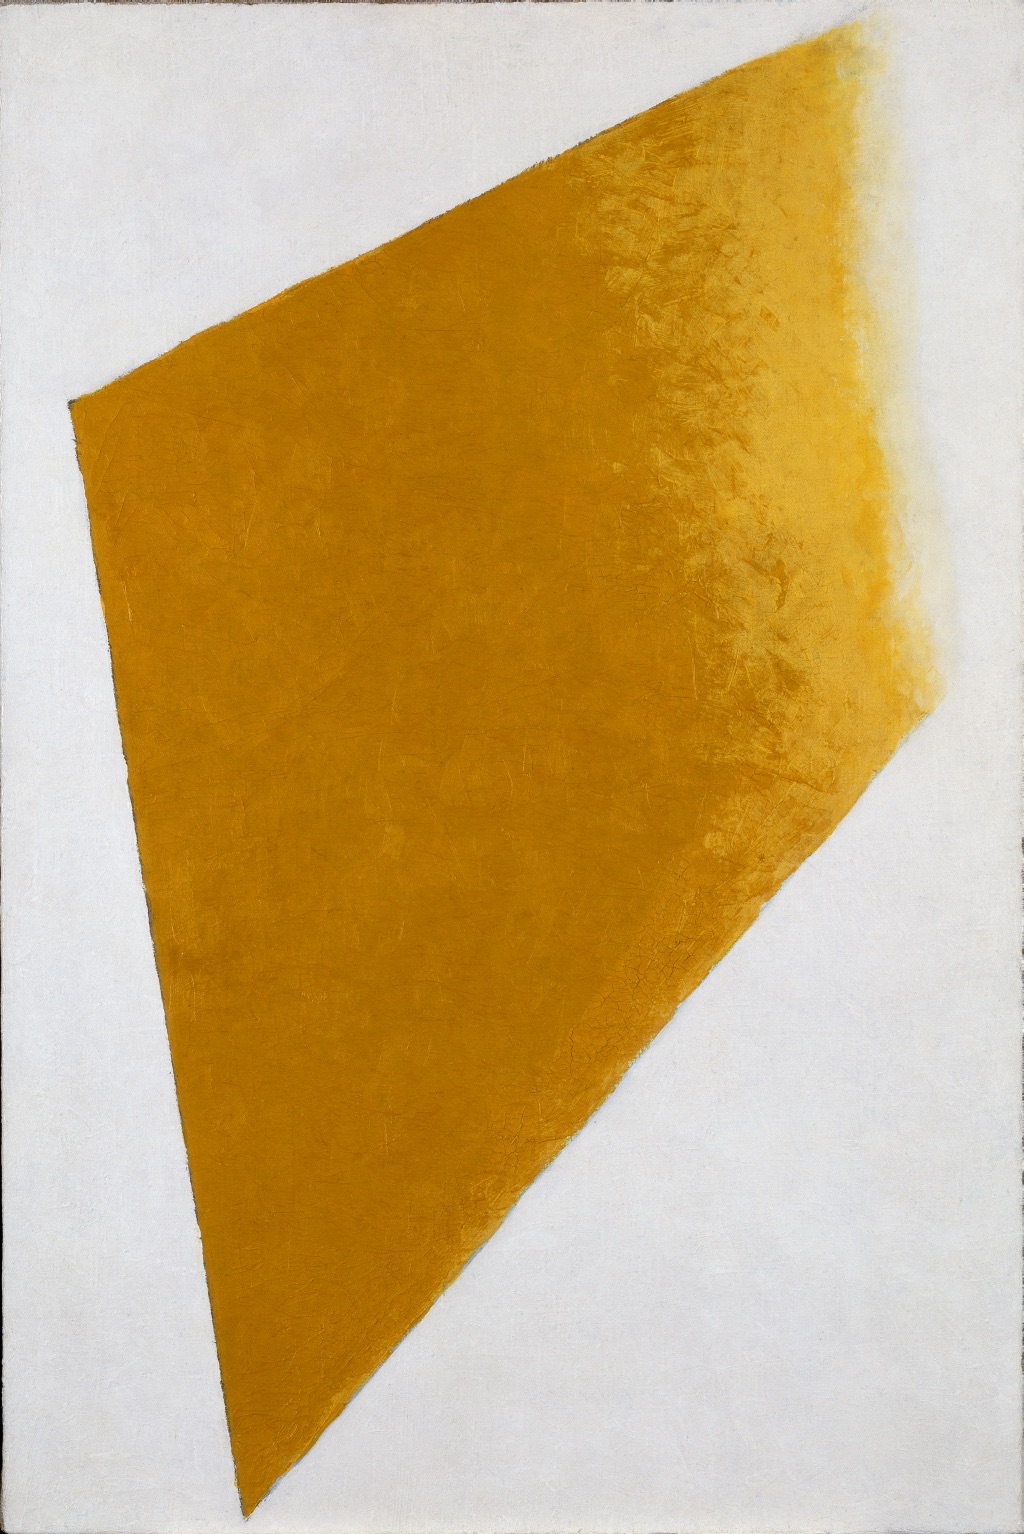 Жовта площина, що розчиняється by Kazimir Malevich - 1917-1918 - 109 x 73.5 x 4.5 см 